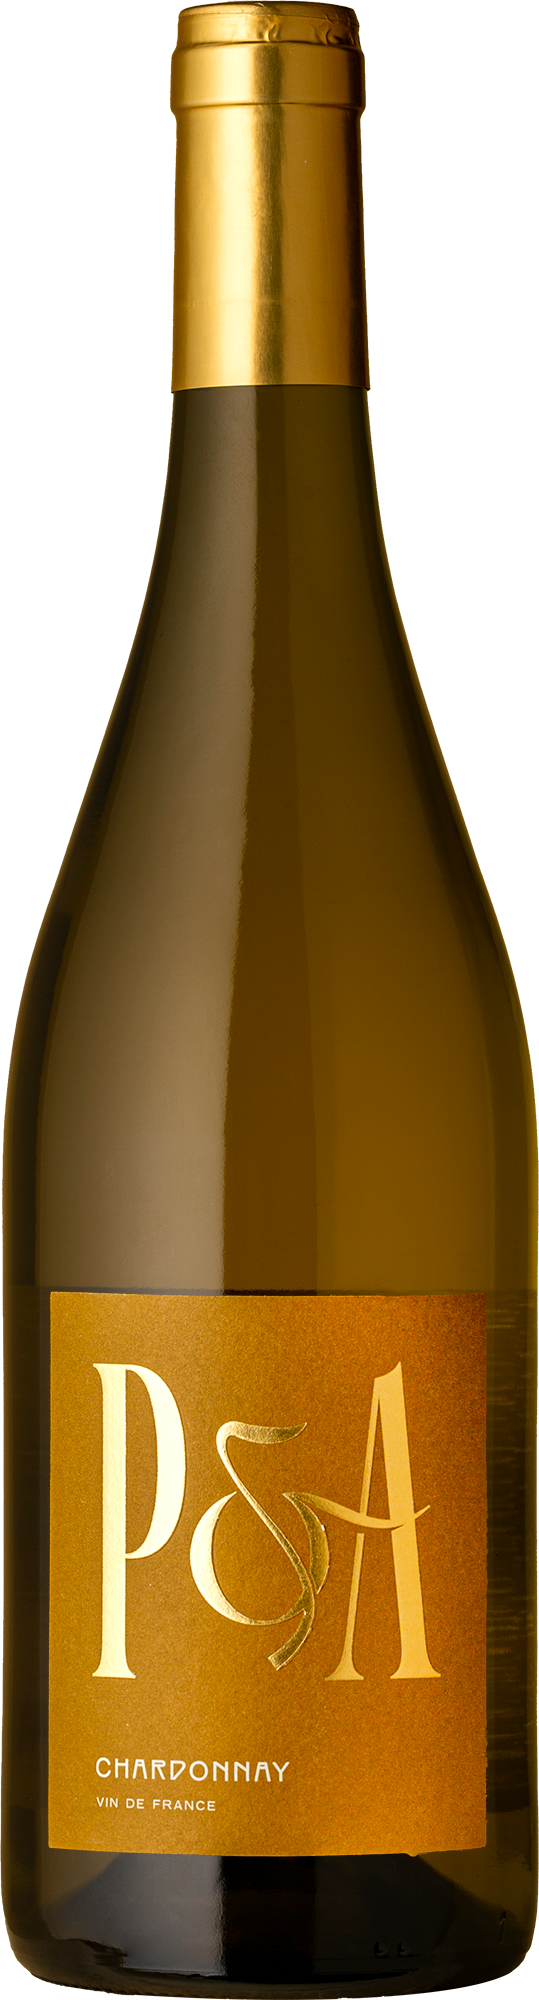 P&A Vin de France Chardonnay 2021 White Wine